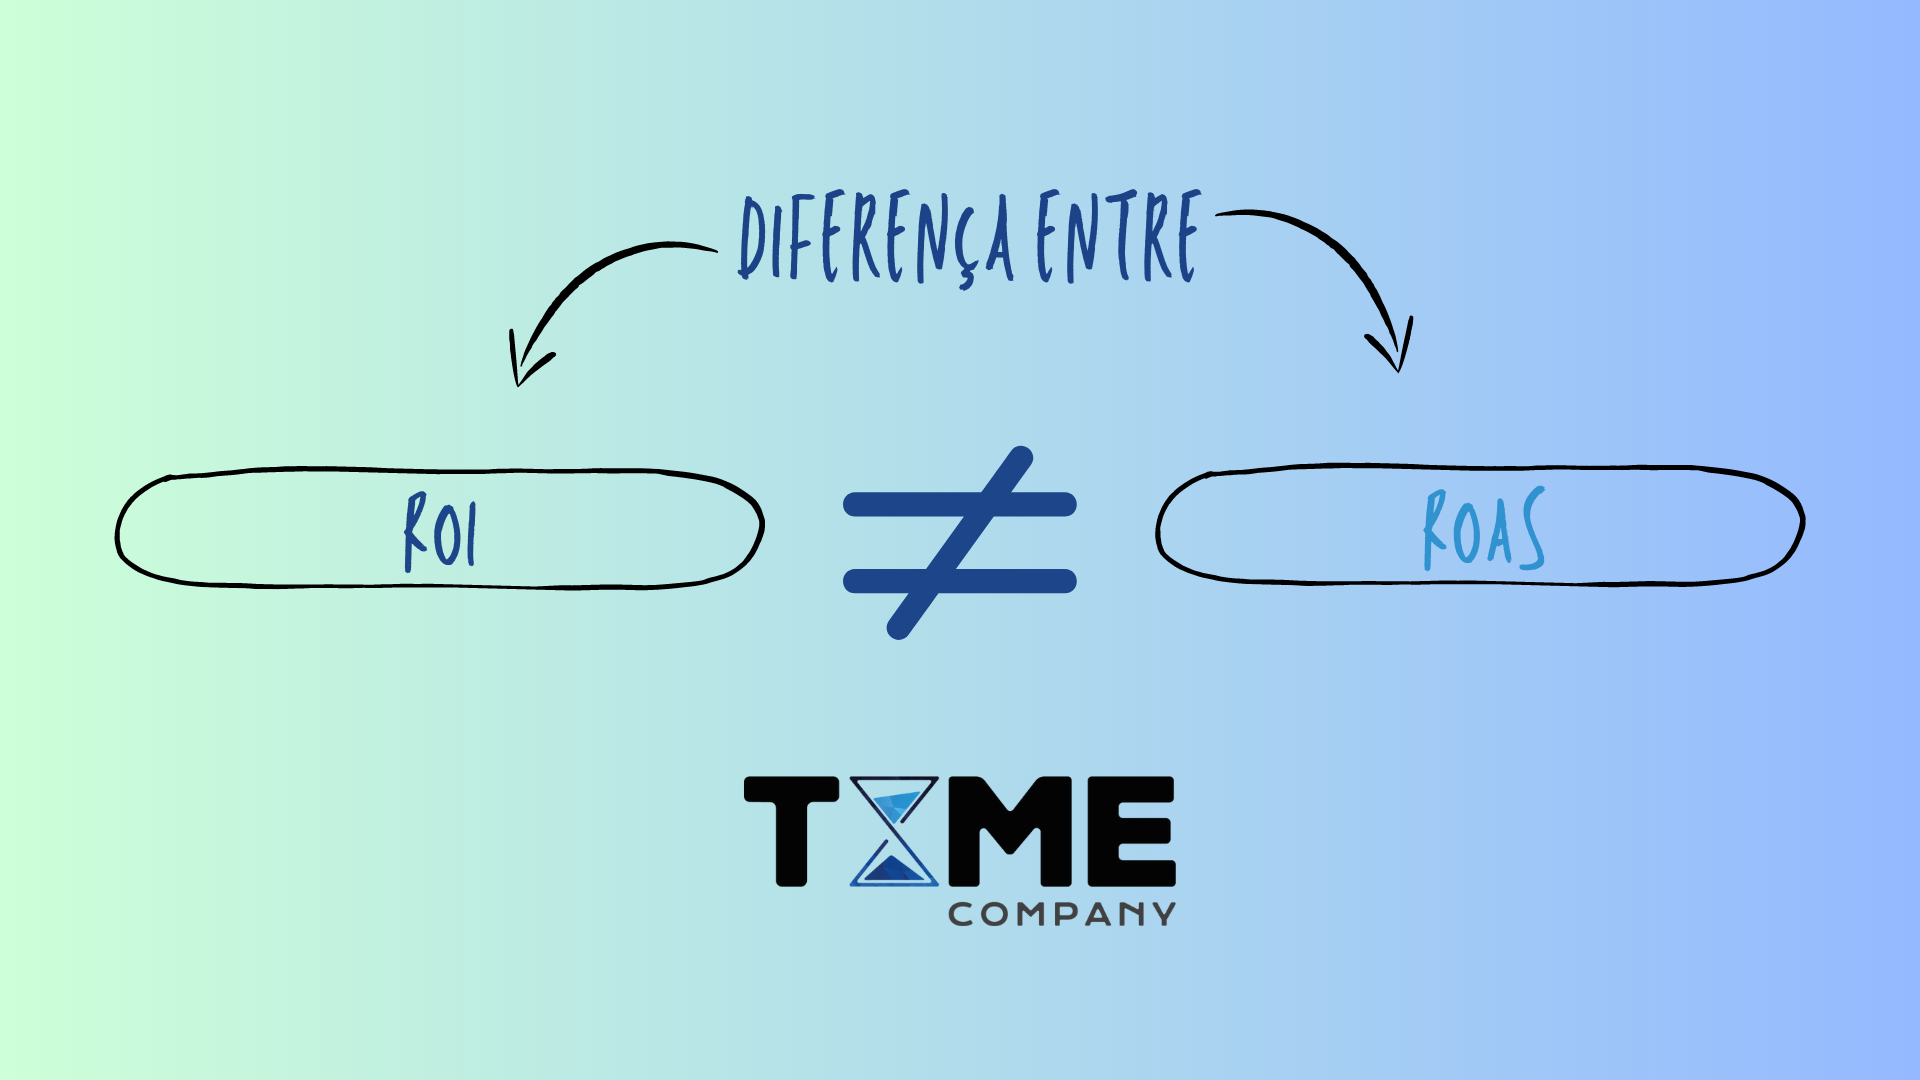 Qual é a diferença entre ON TIME e IN TIME?